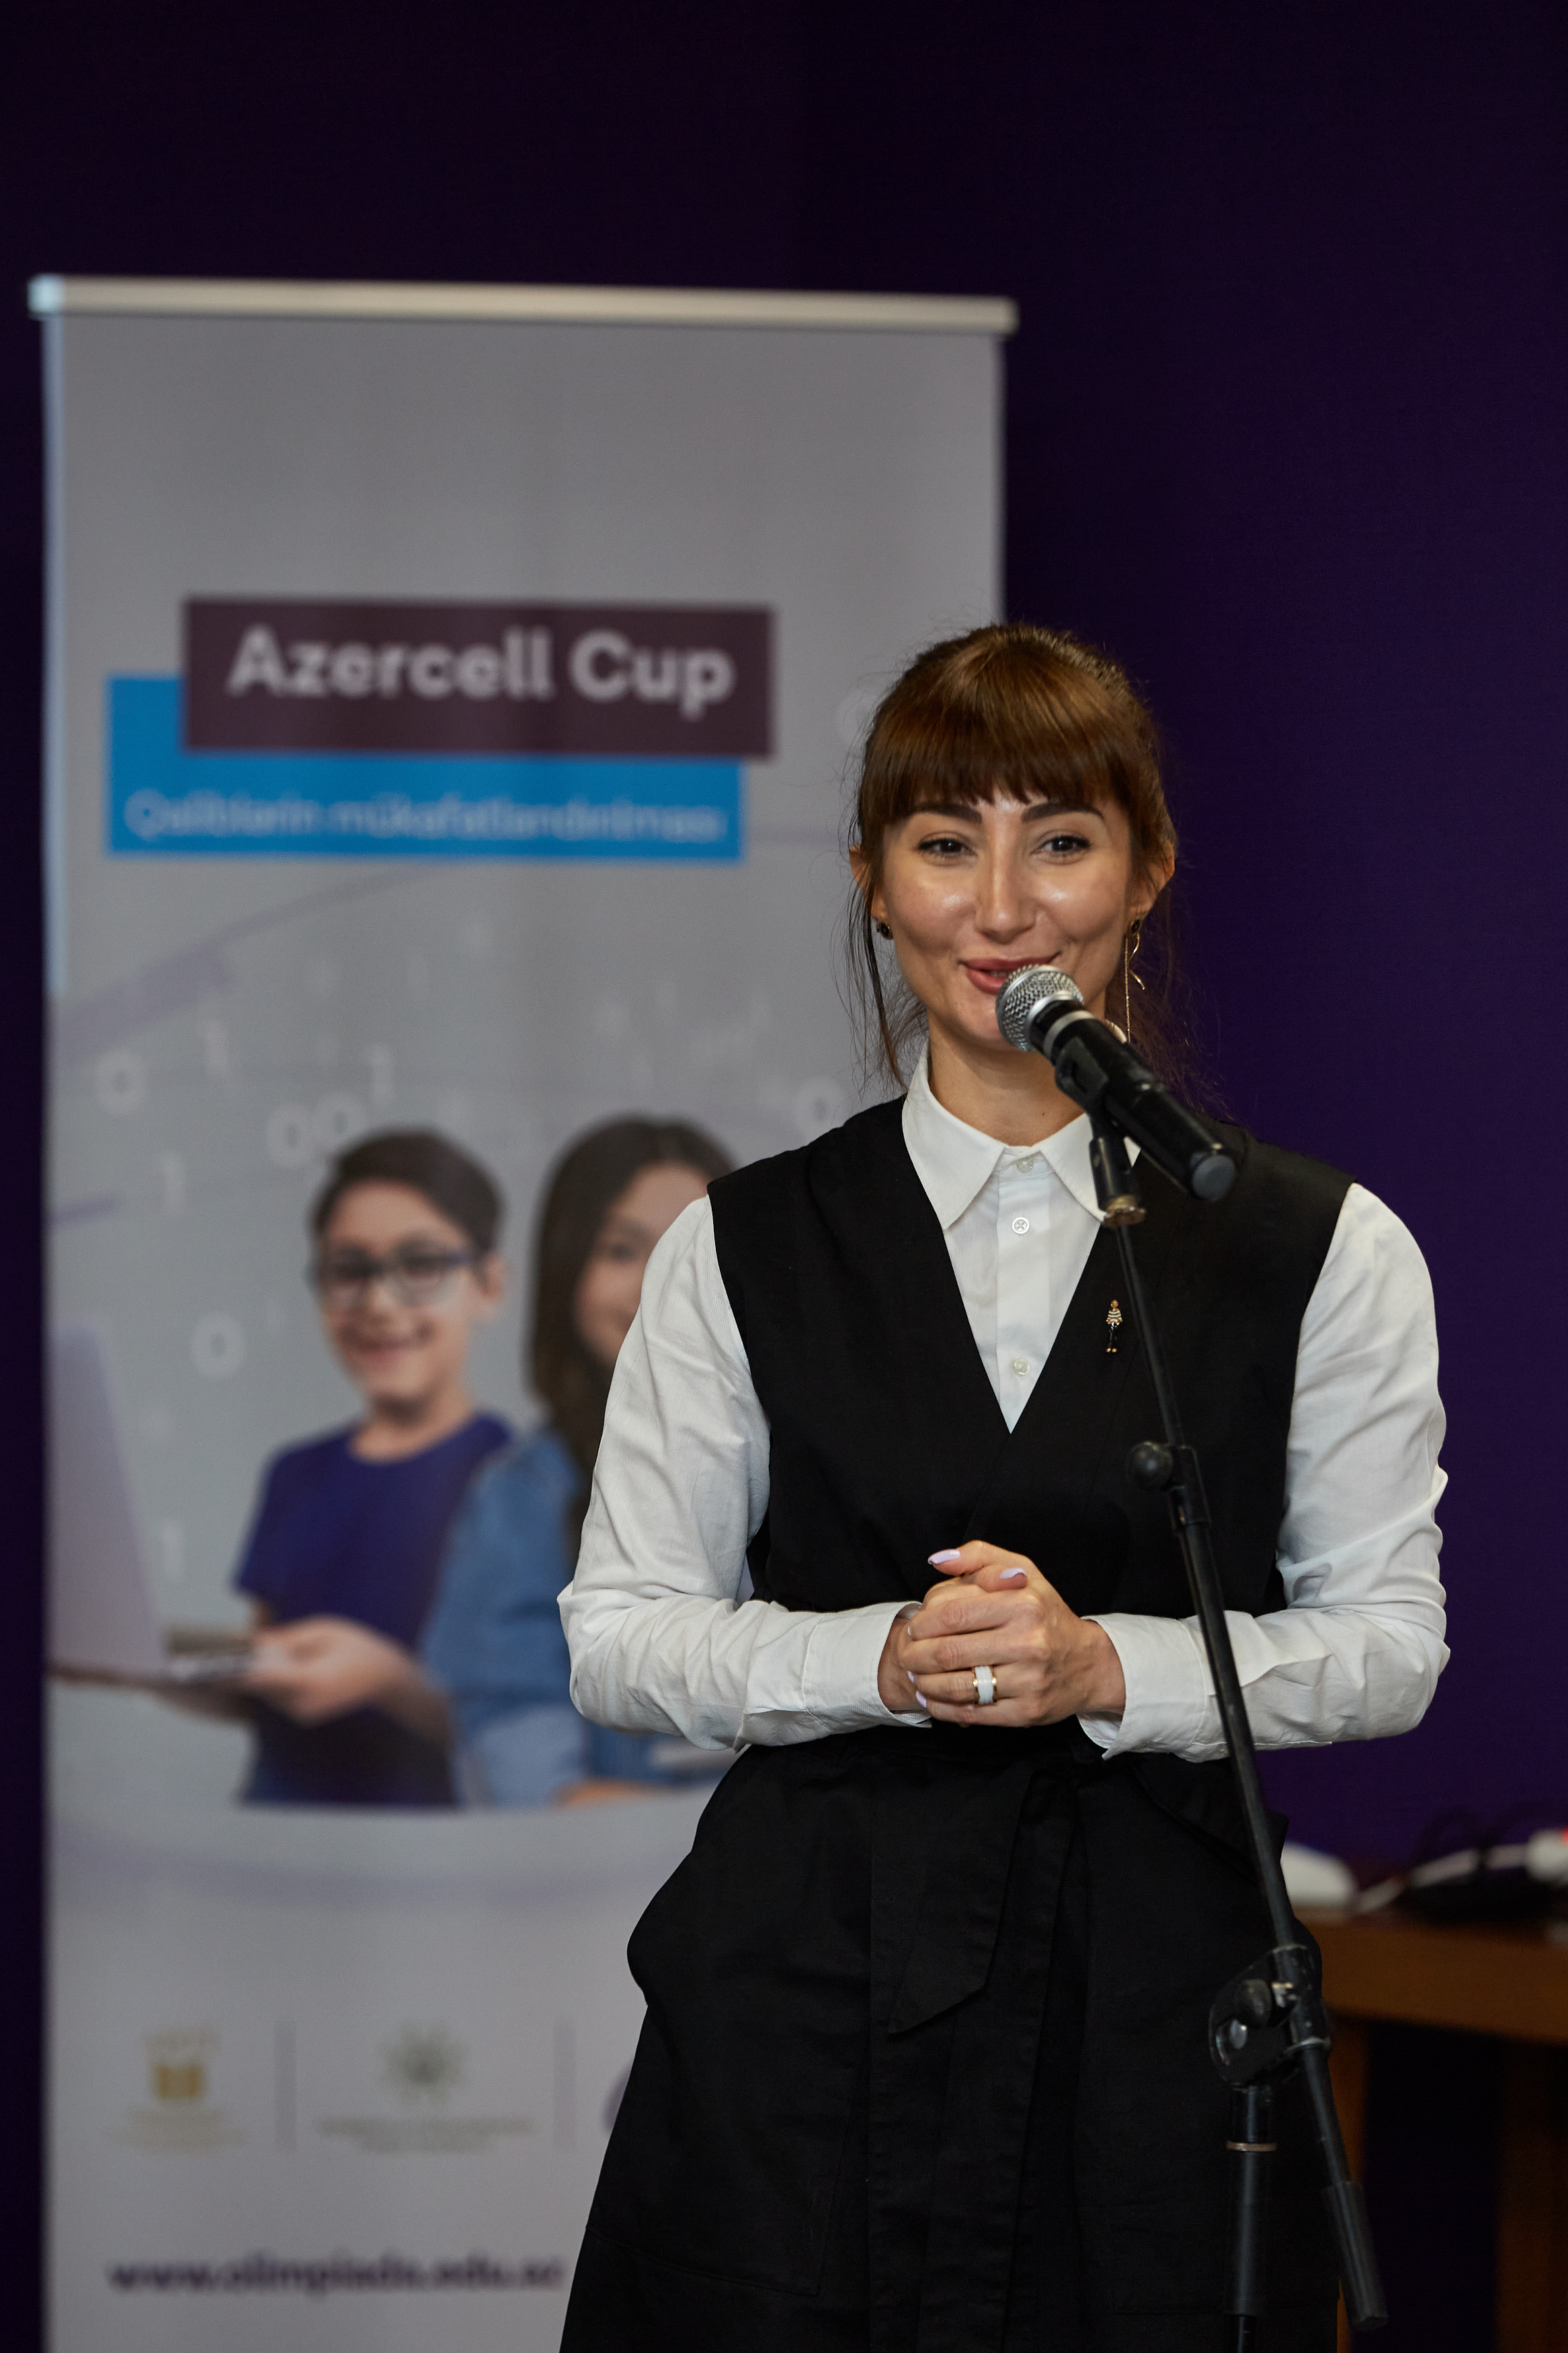 “AZERCELL CUP” müsabiqəsinin qalibləri mükafatlandırıldı -  FOTO 